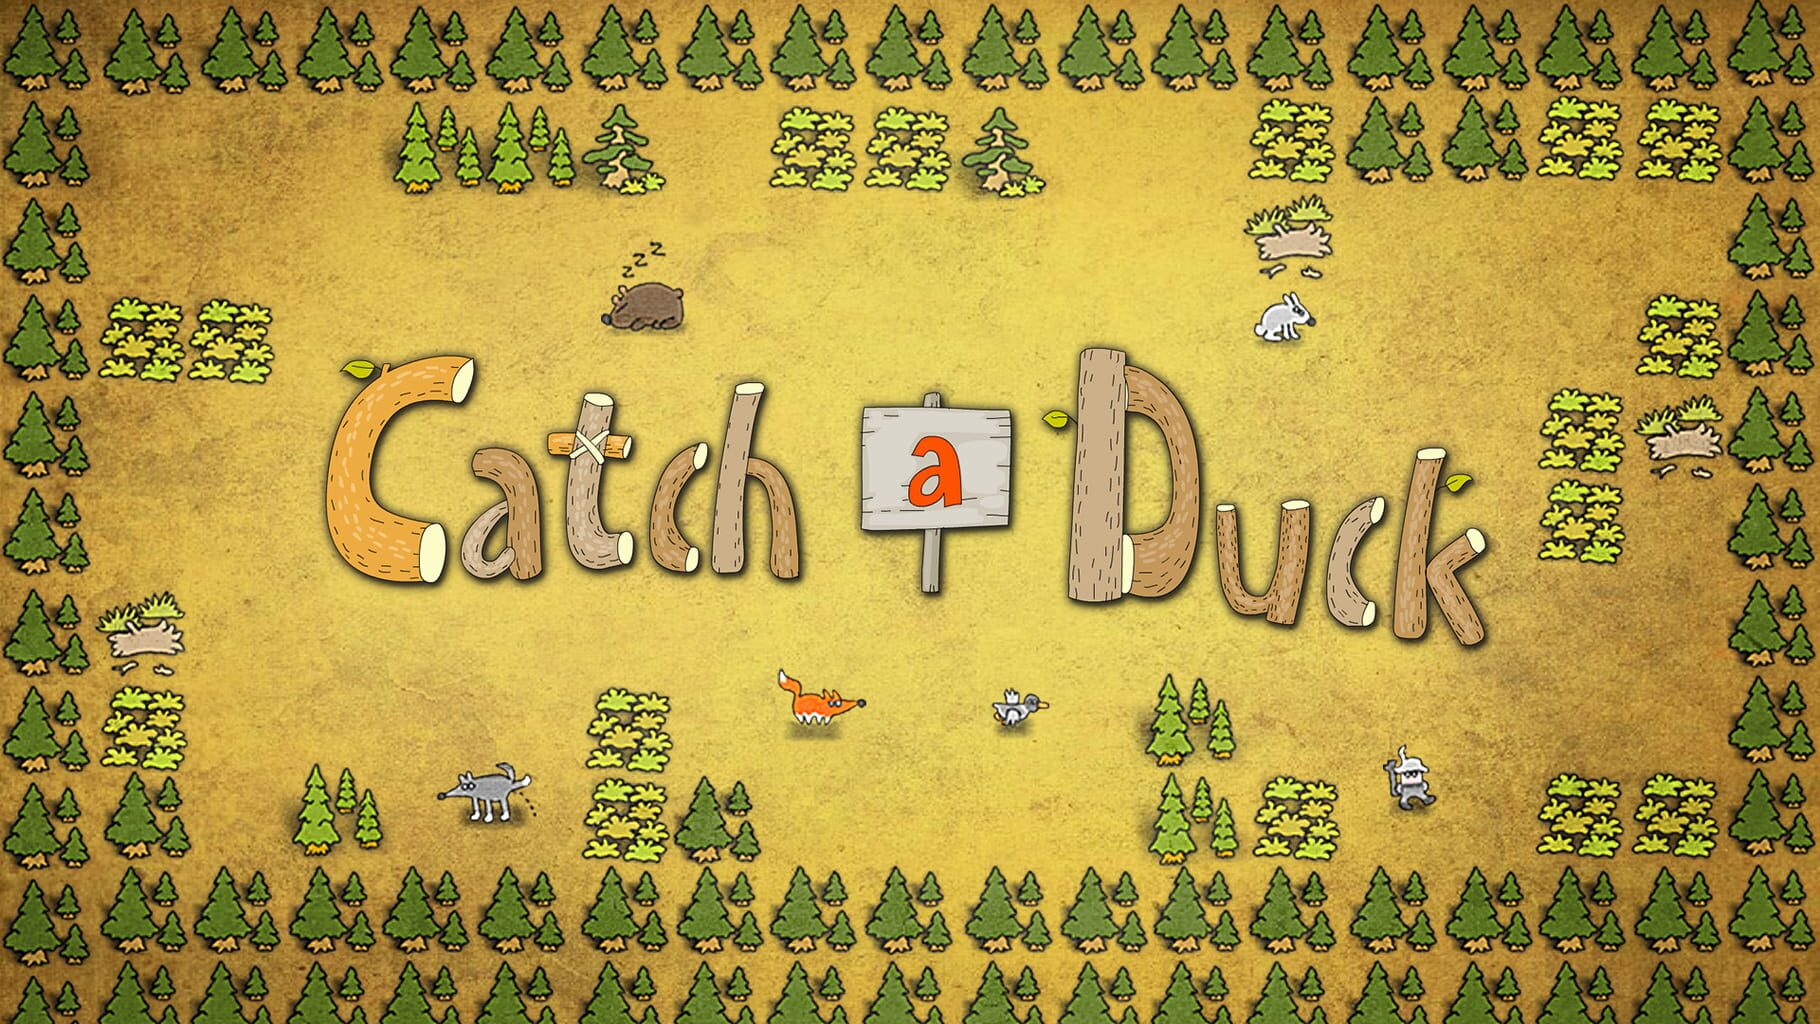 Catch a Duck artwork